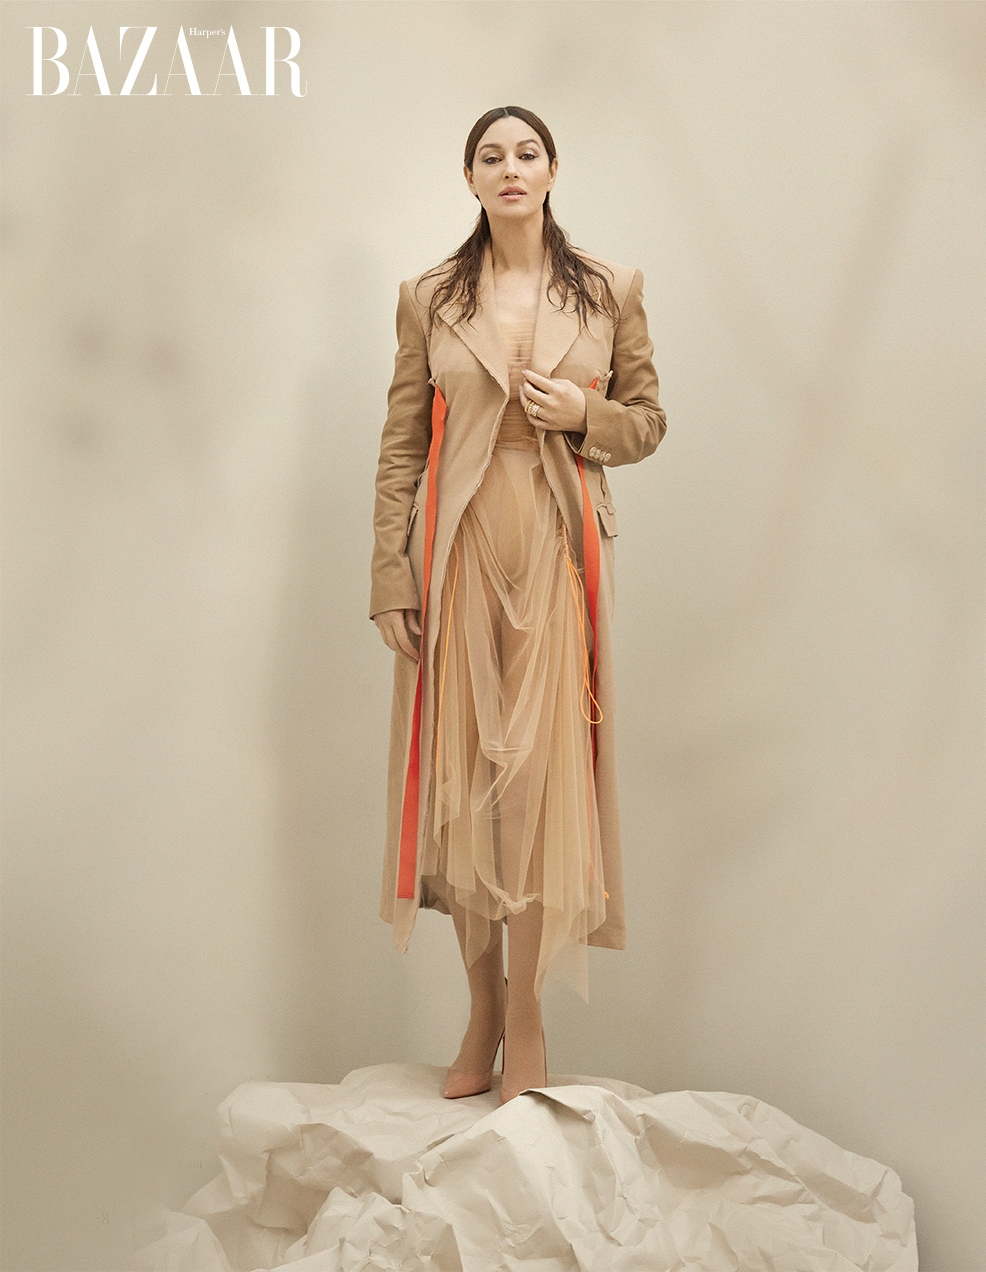 Monica Bellucci for Harper’s Bazaar Vietnam (2022)